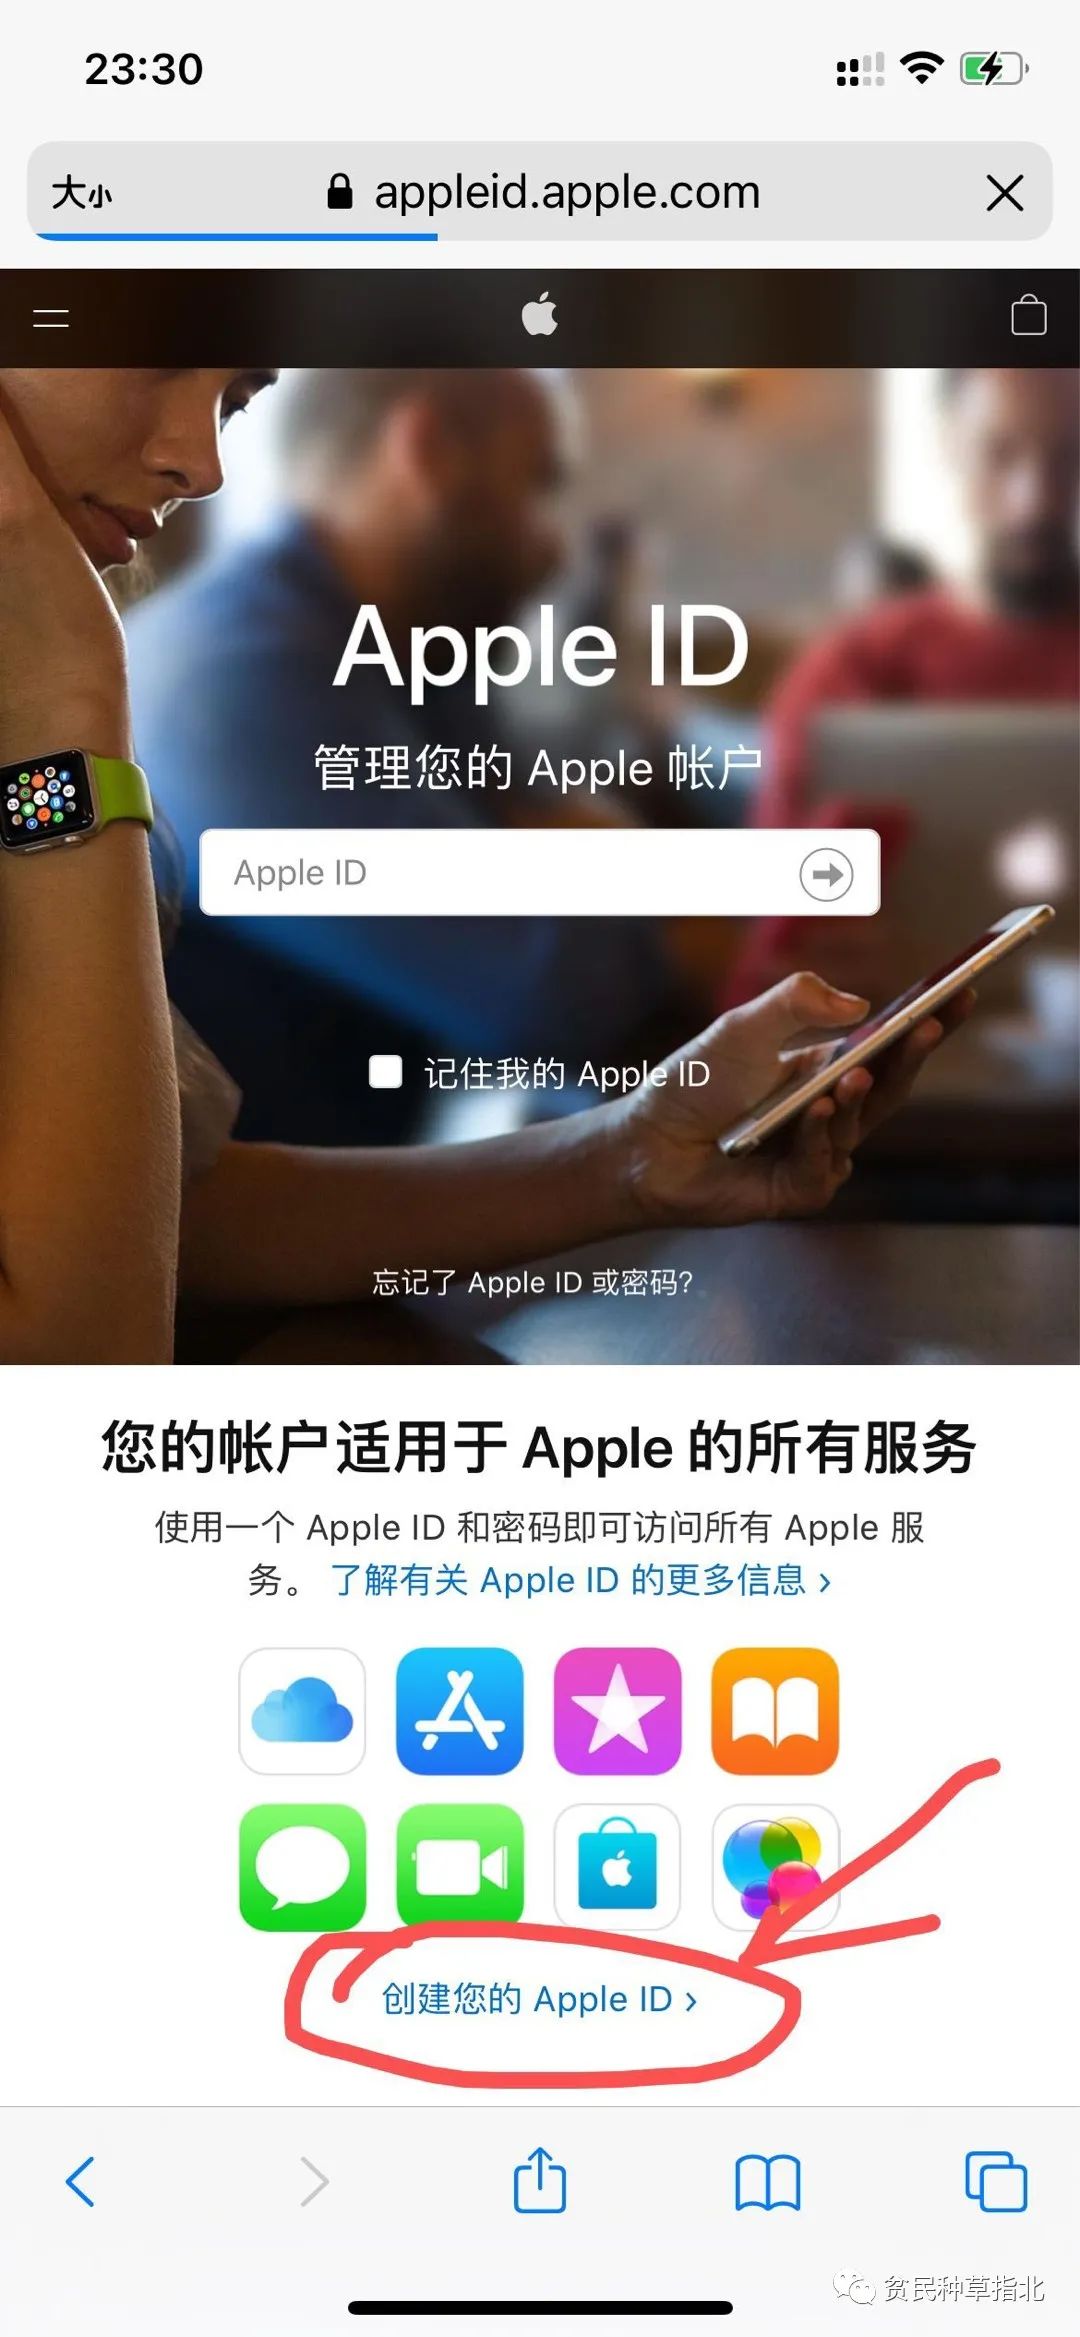 美区apple id分享2018_2017 apple id转美区_美区id付款方式填写